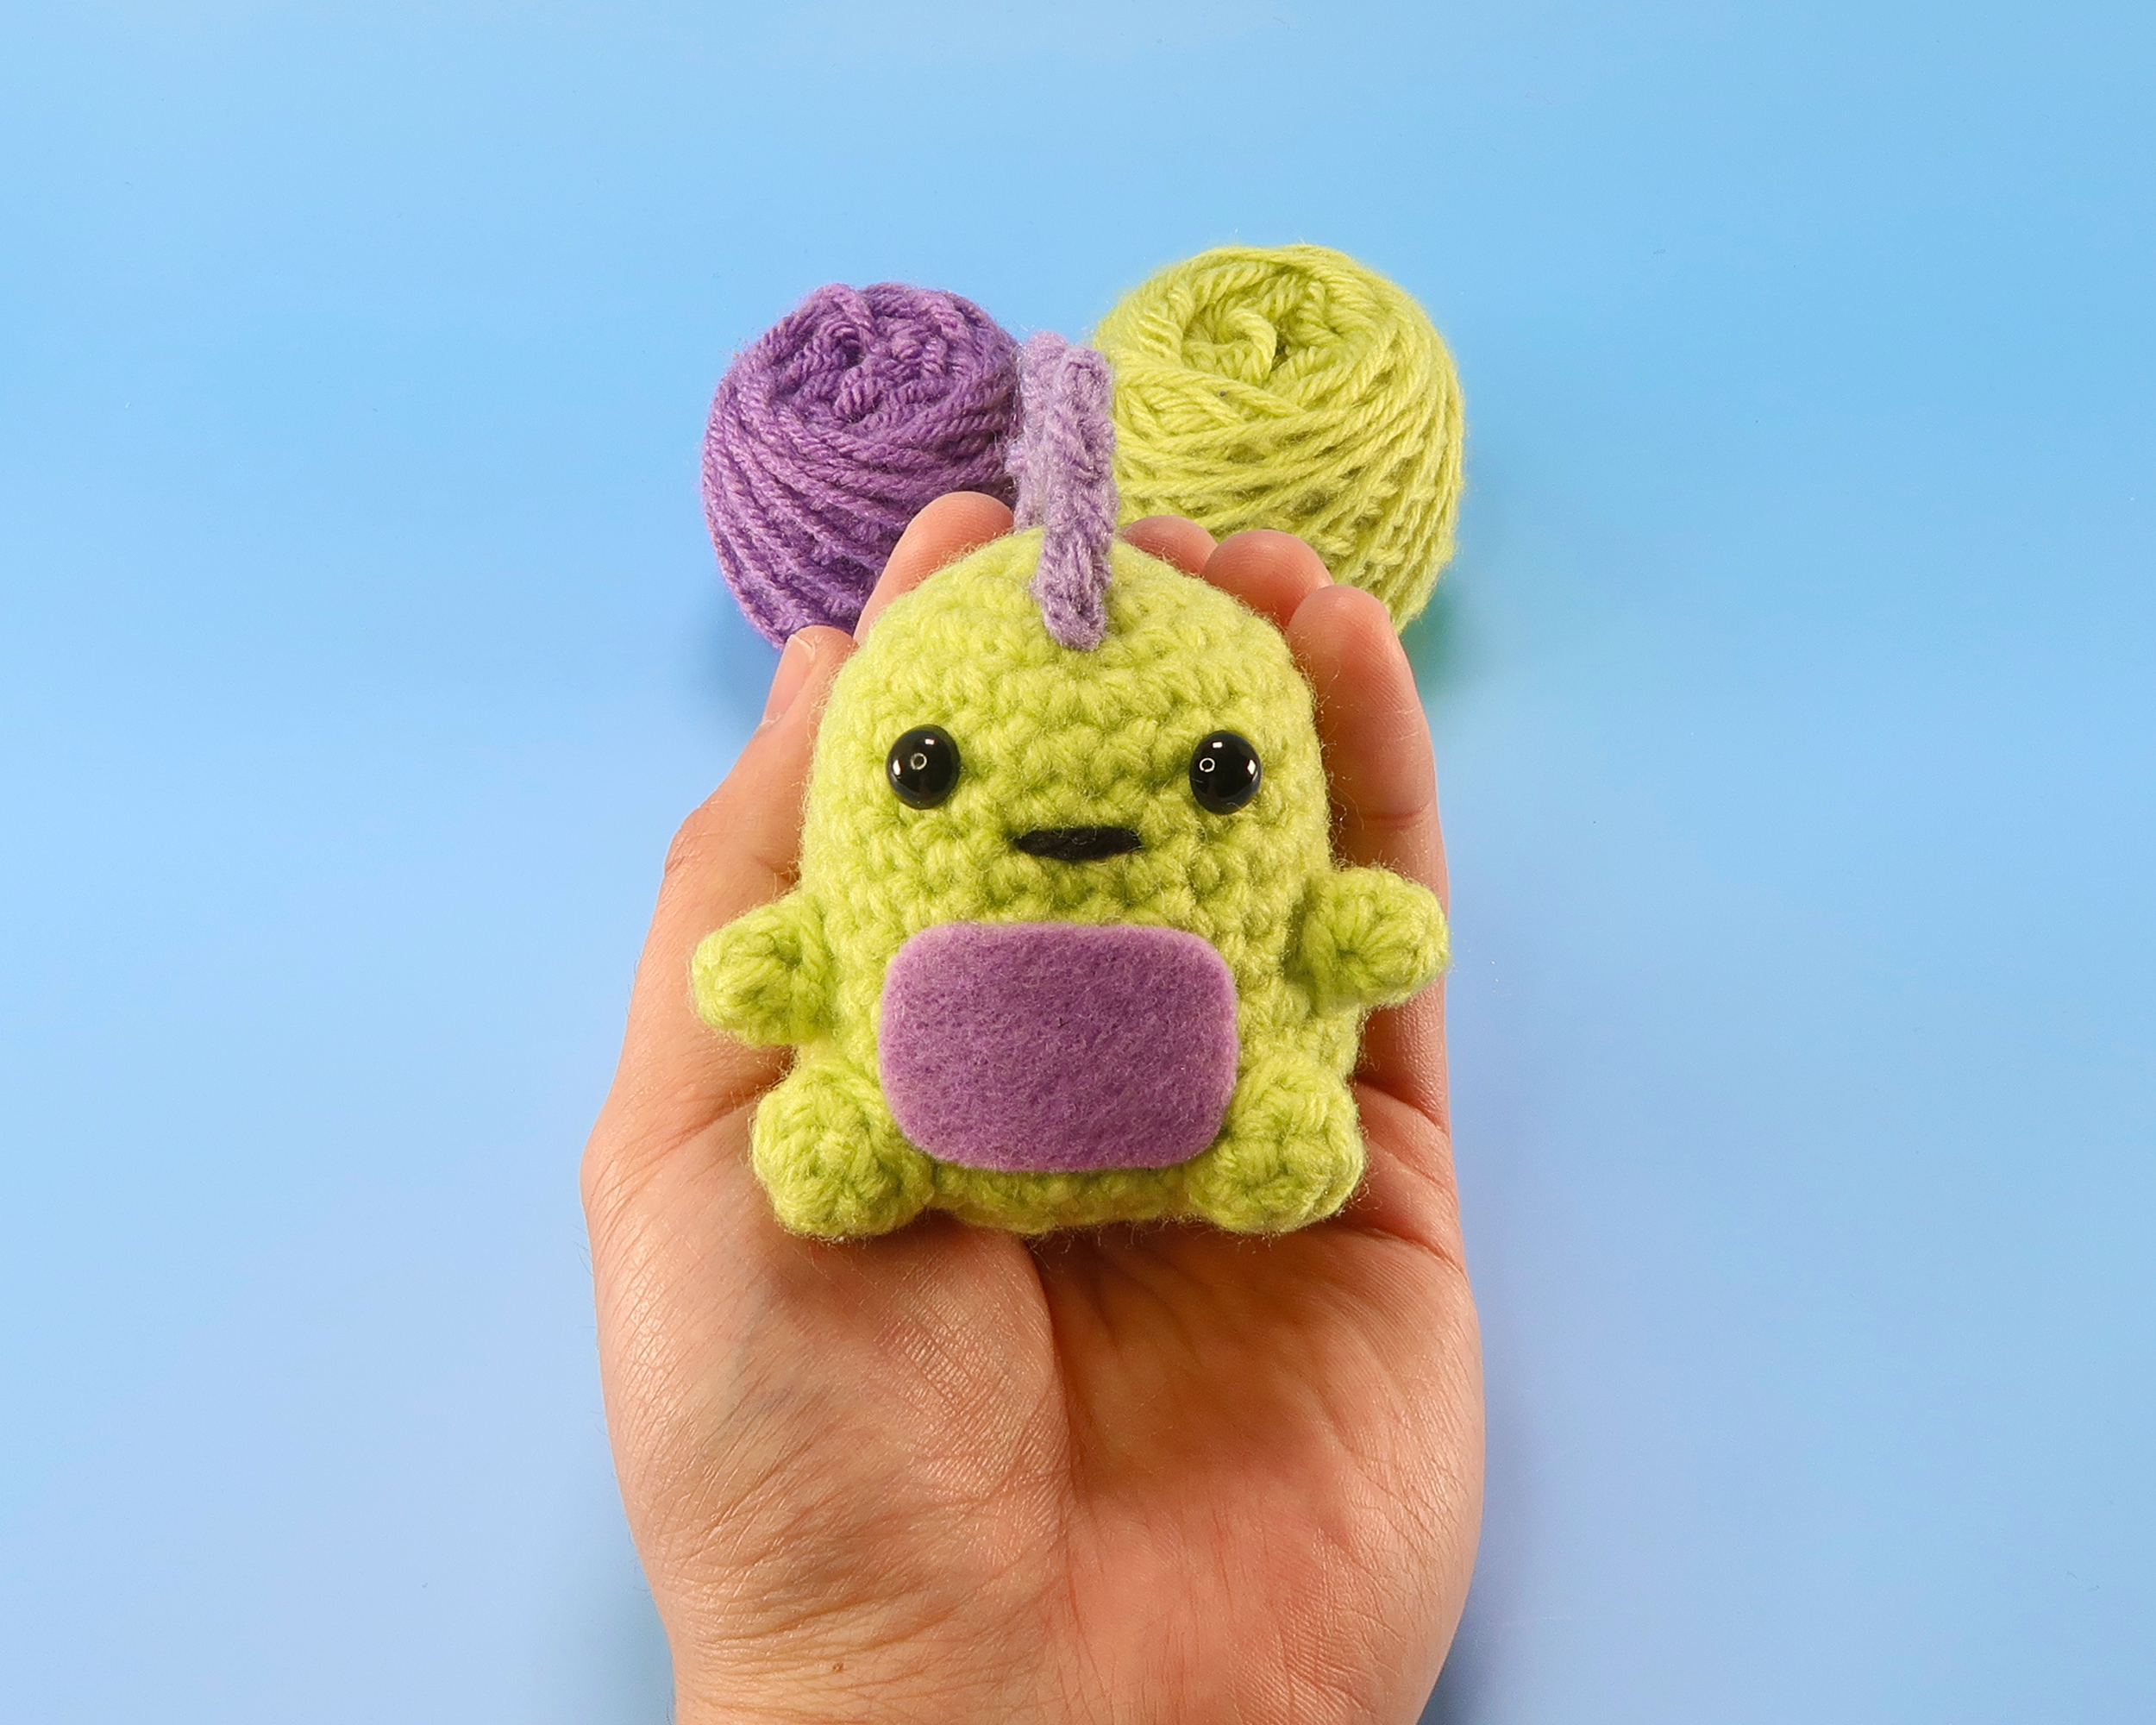 UzecPk Beginners Crochet Kit, Animals Crochet Kit for Beginners,Crochet  Knitting Kit(Dinosaur)